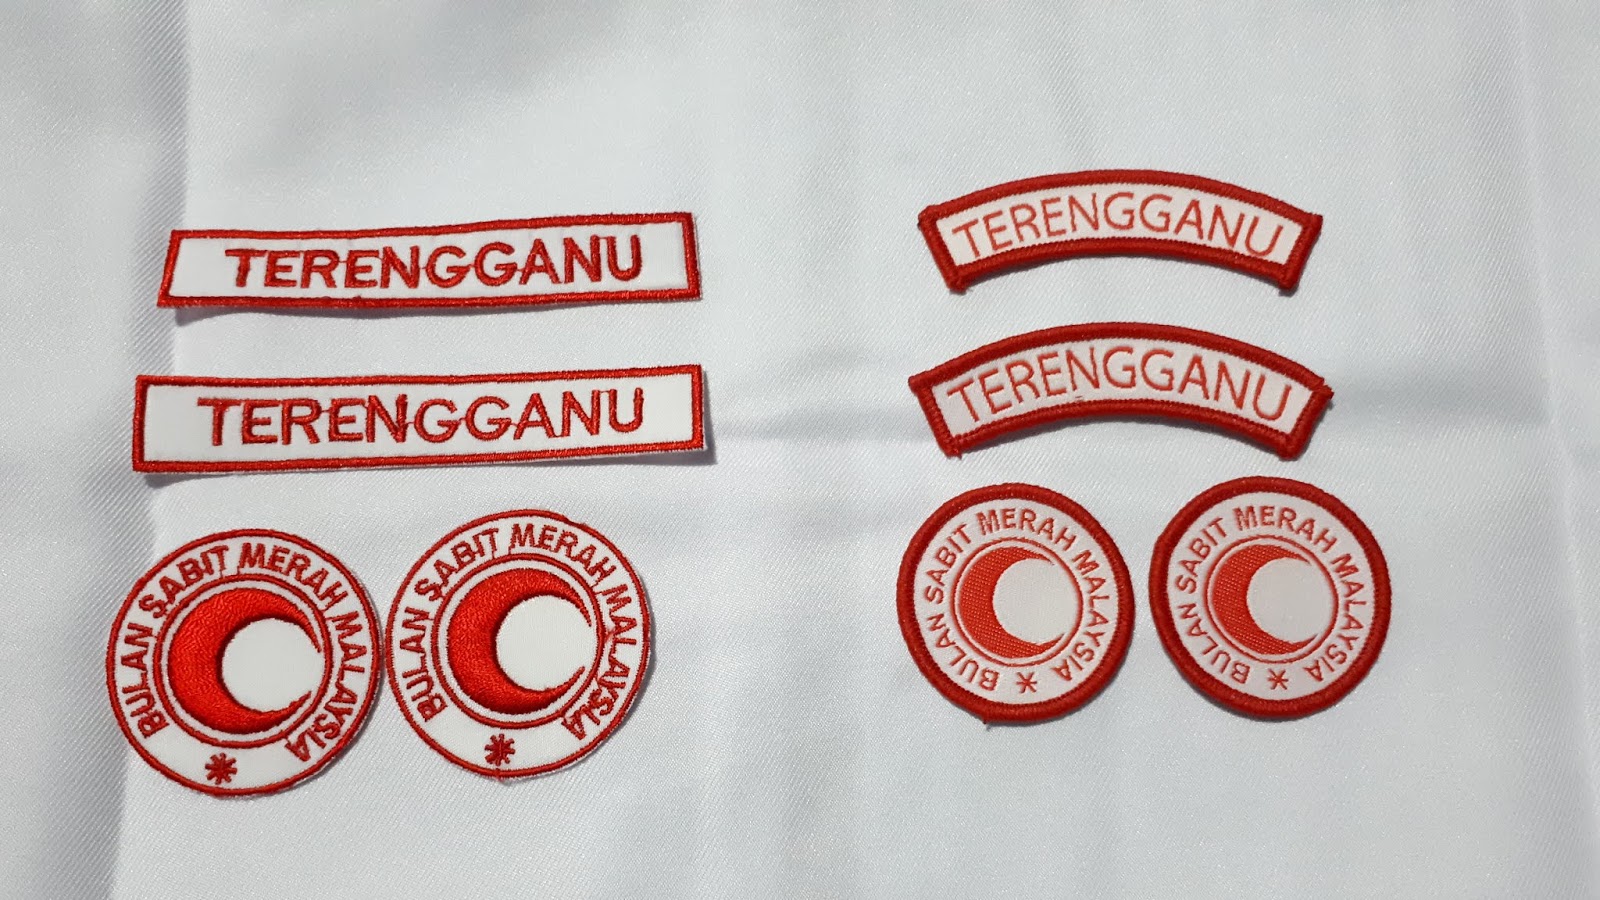 Wafiq Sertai Persatuan Bulan Sabit Merah Pbsm Kelengkapan Uniform Pbsm Berserta Harga